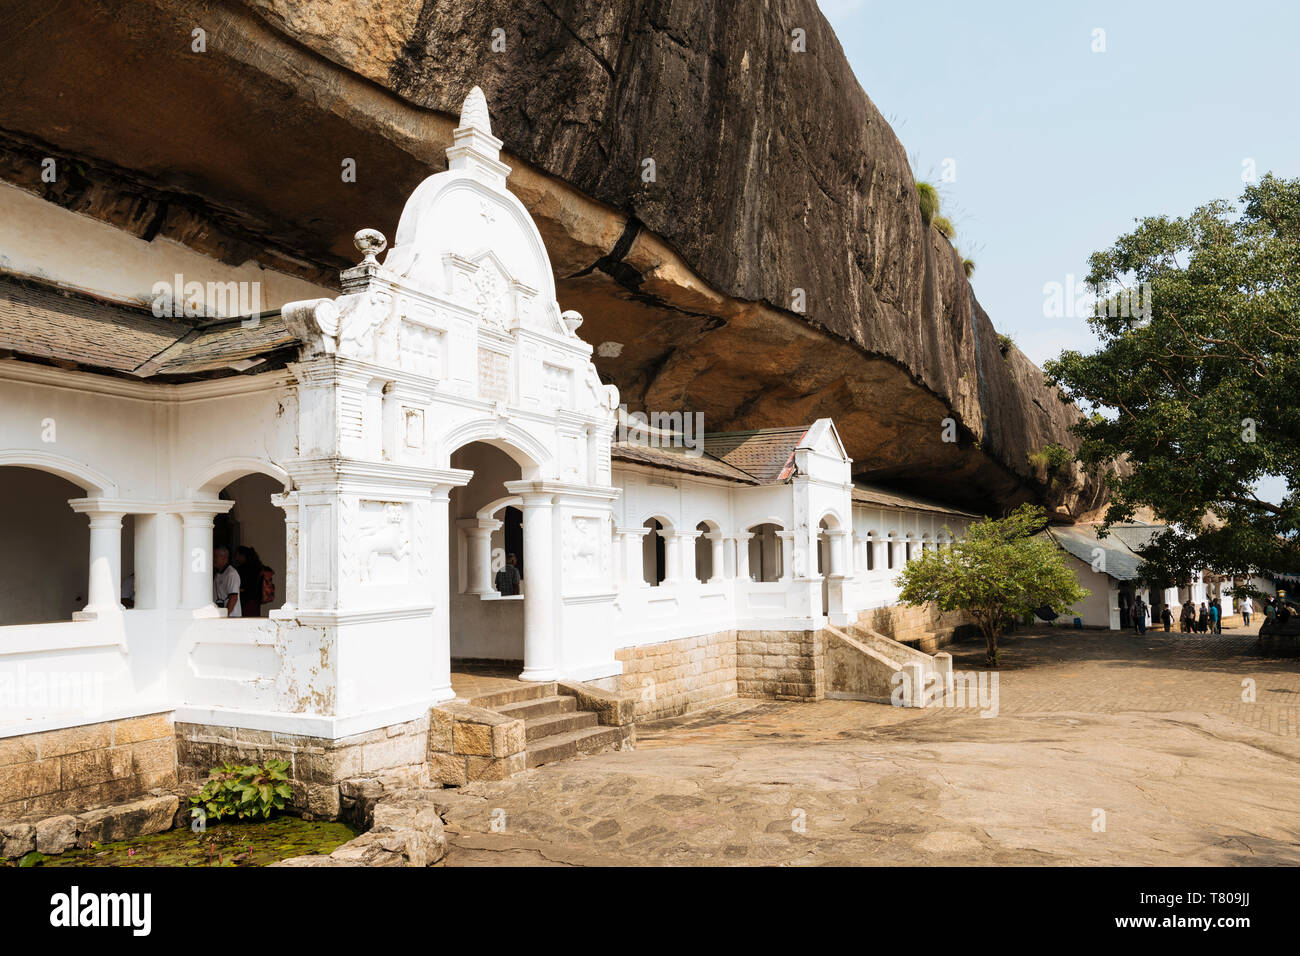 Dambulla Rock Cave Temple, UNESCO World Heritage Site, Central Province, Sri Lanka, Asia Stock Photo